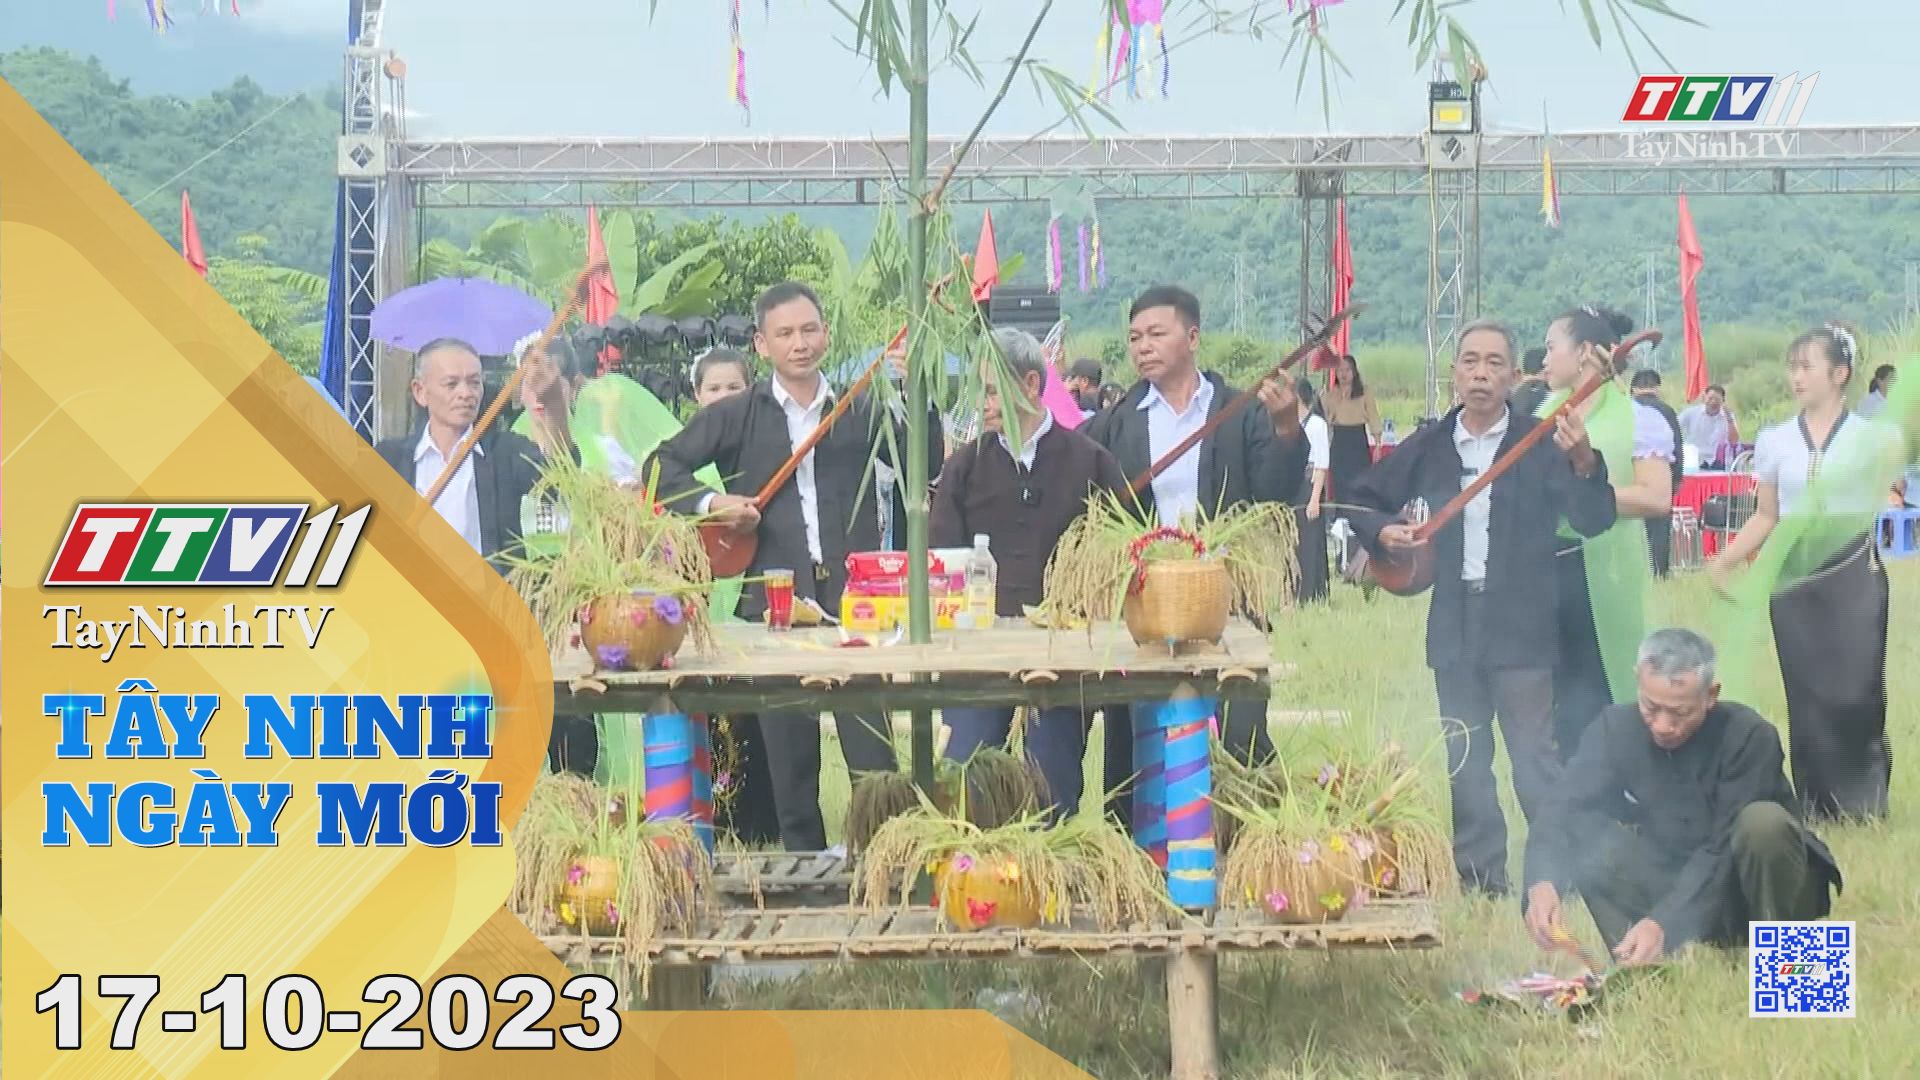 Tây Ninh ngày mới 17-10-2023 | Tin tức hôm nay | TayNinhTV